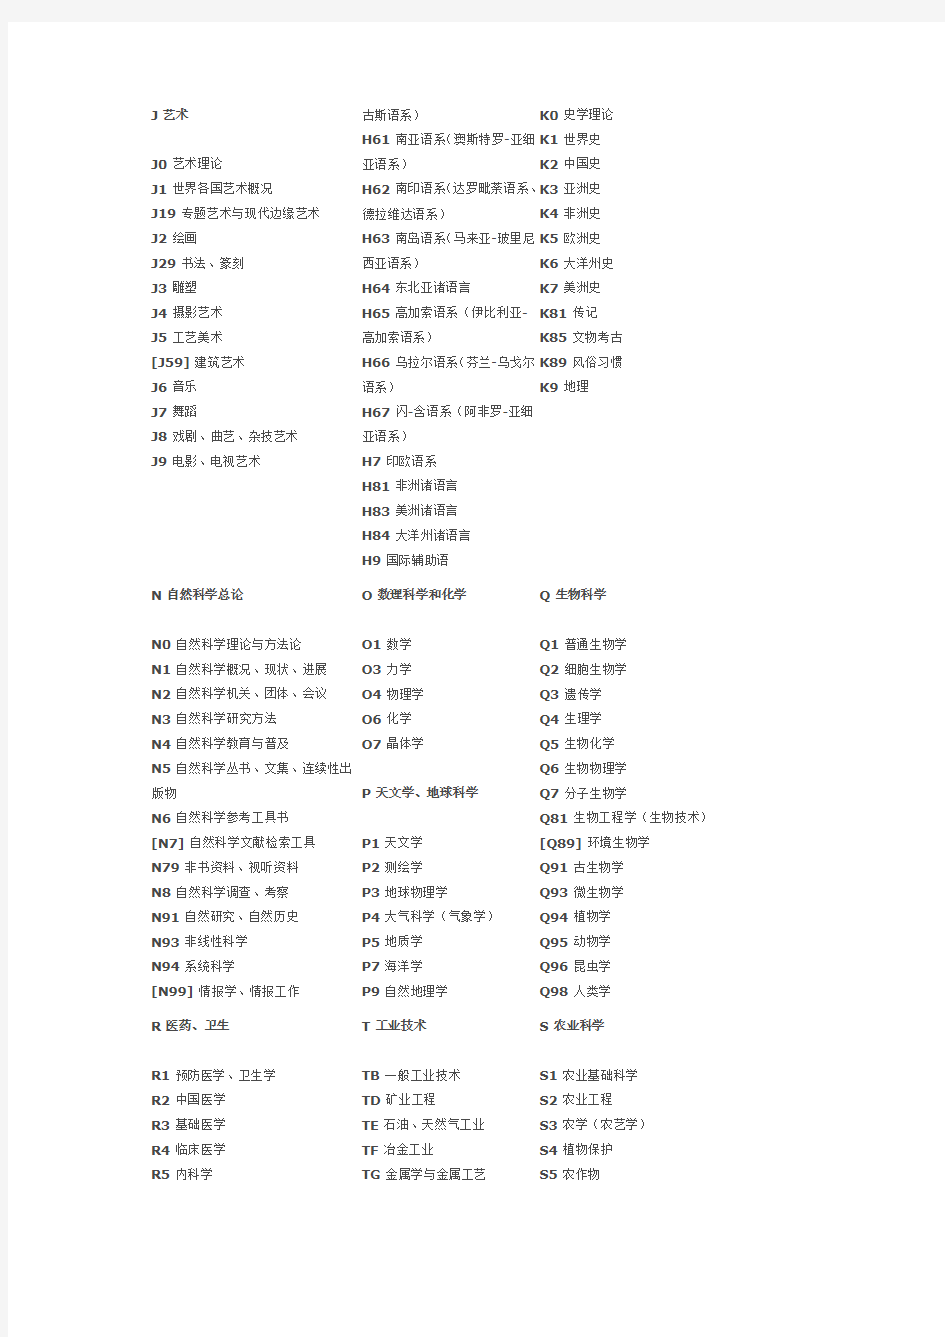 中国图书分类法简表第五版